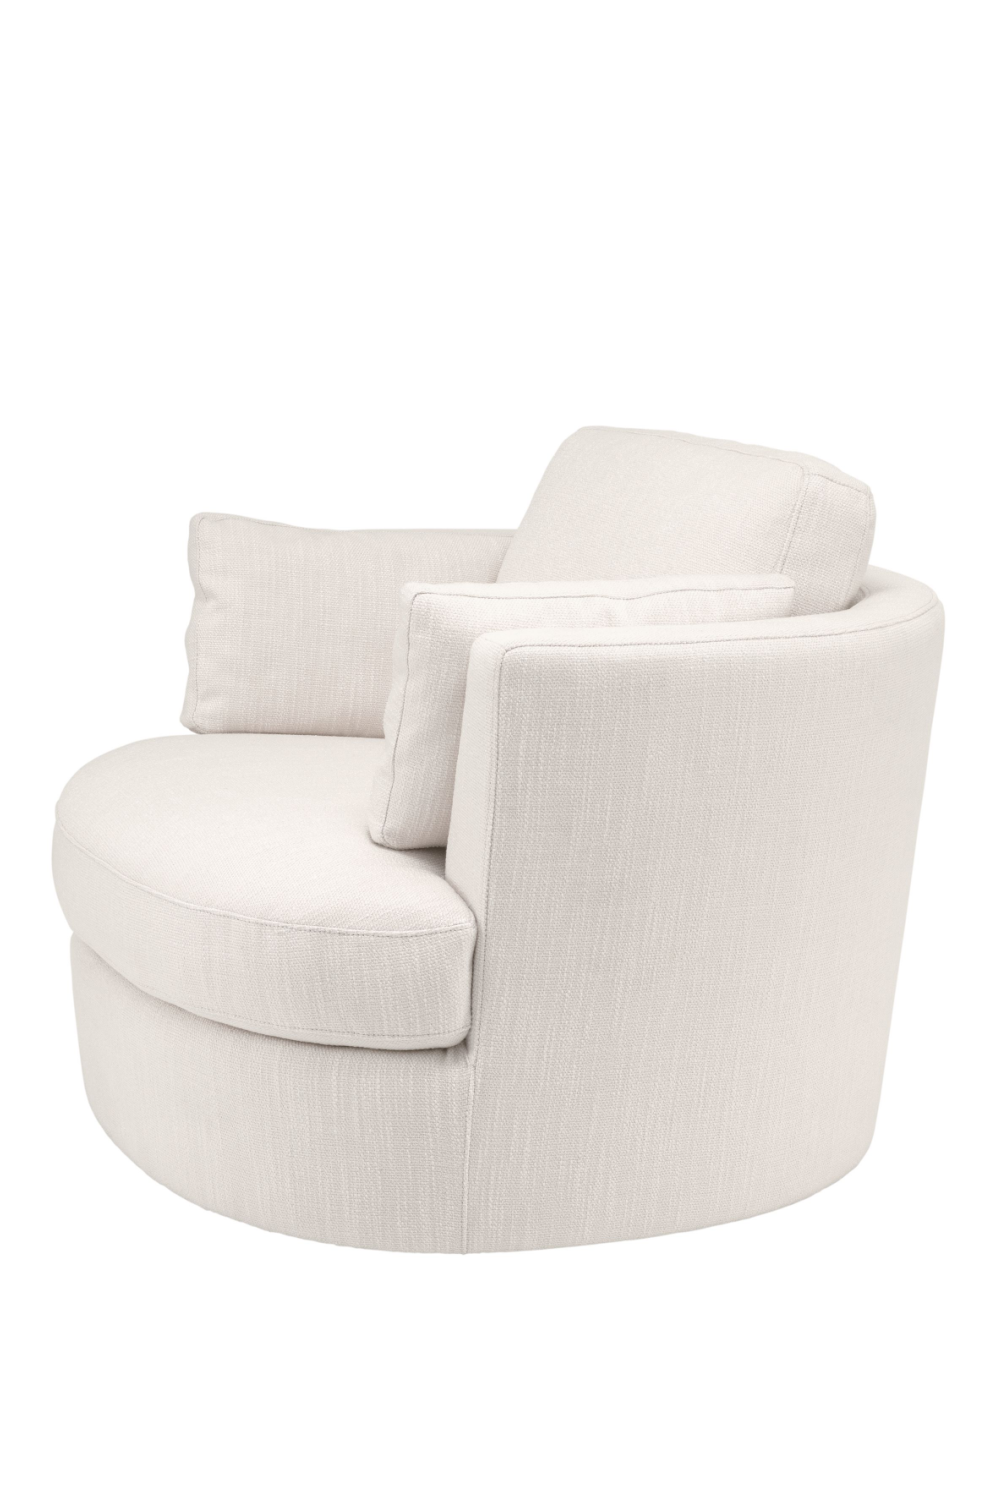 White Club Swivel Chair | Eichholtz Clarissa | Oroa.com